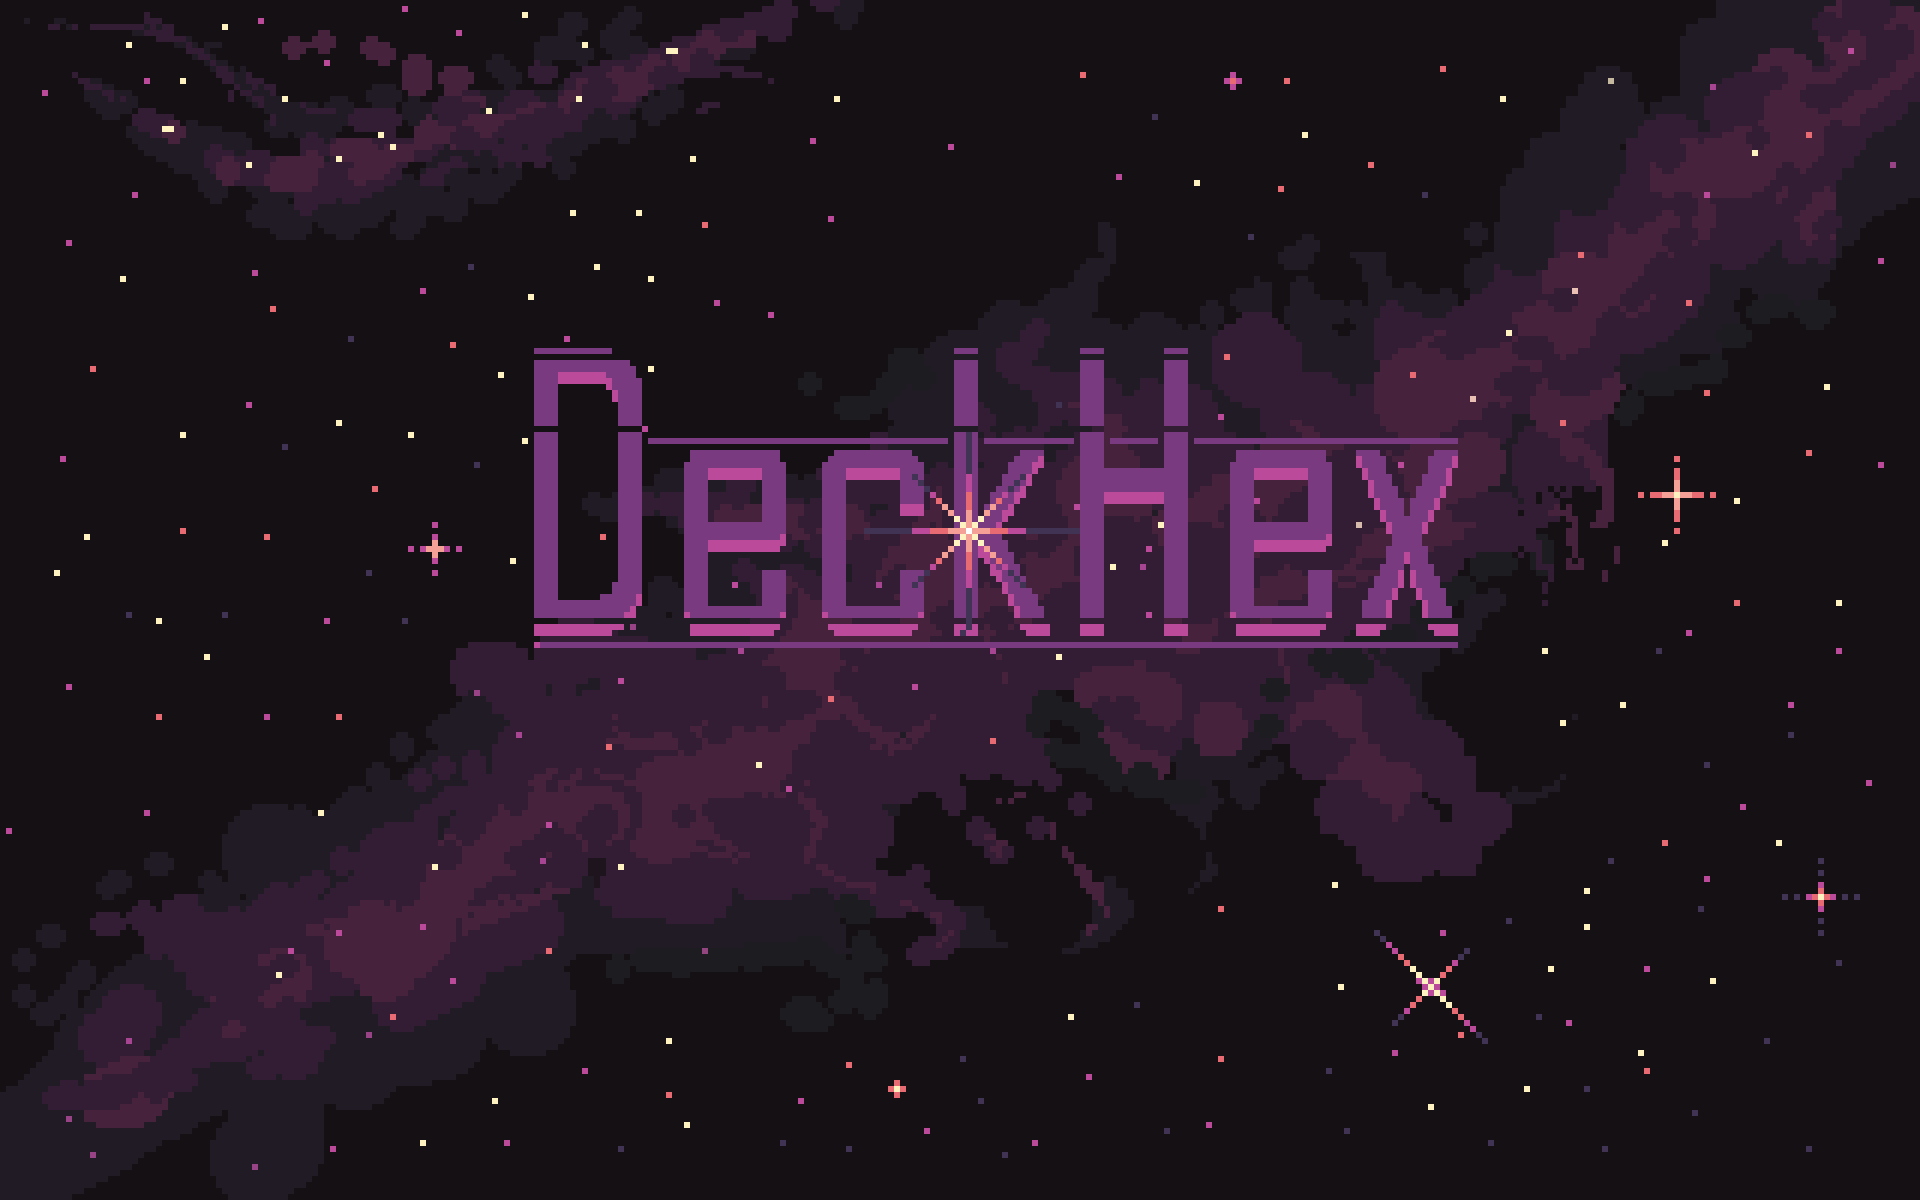 DeckHex